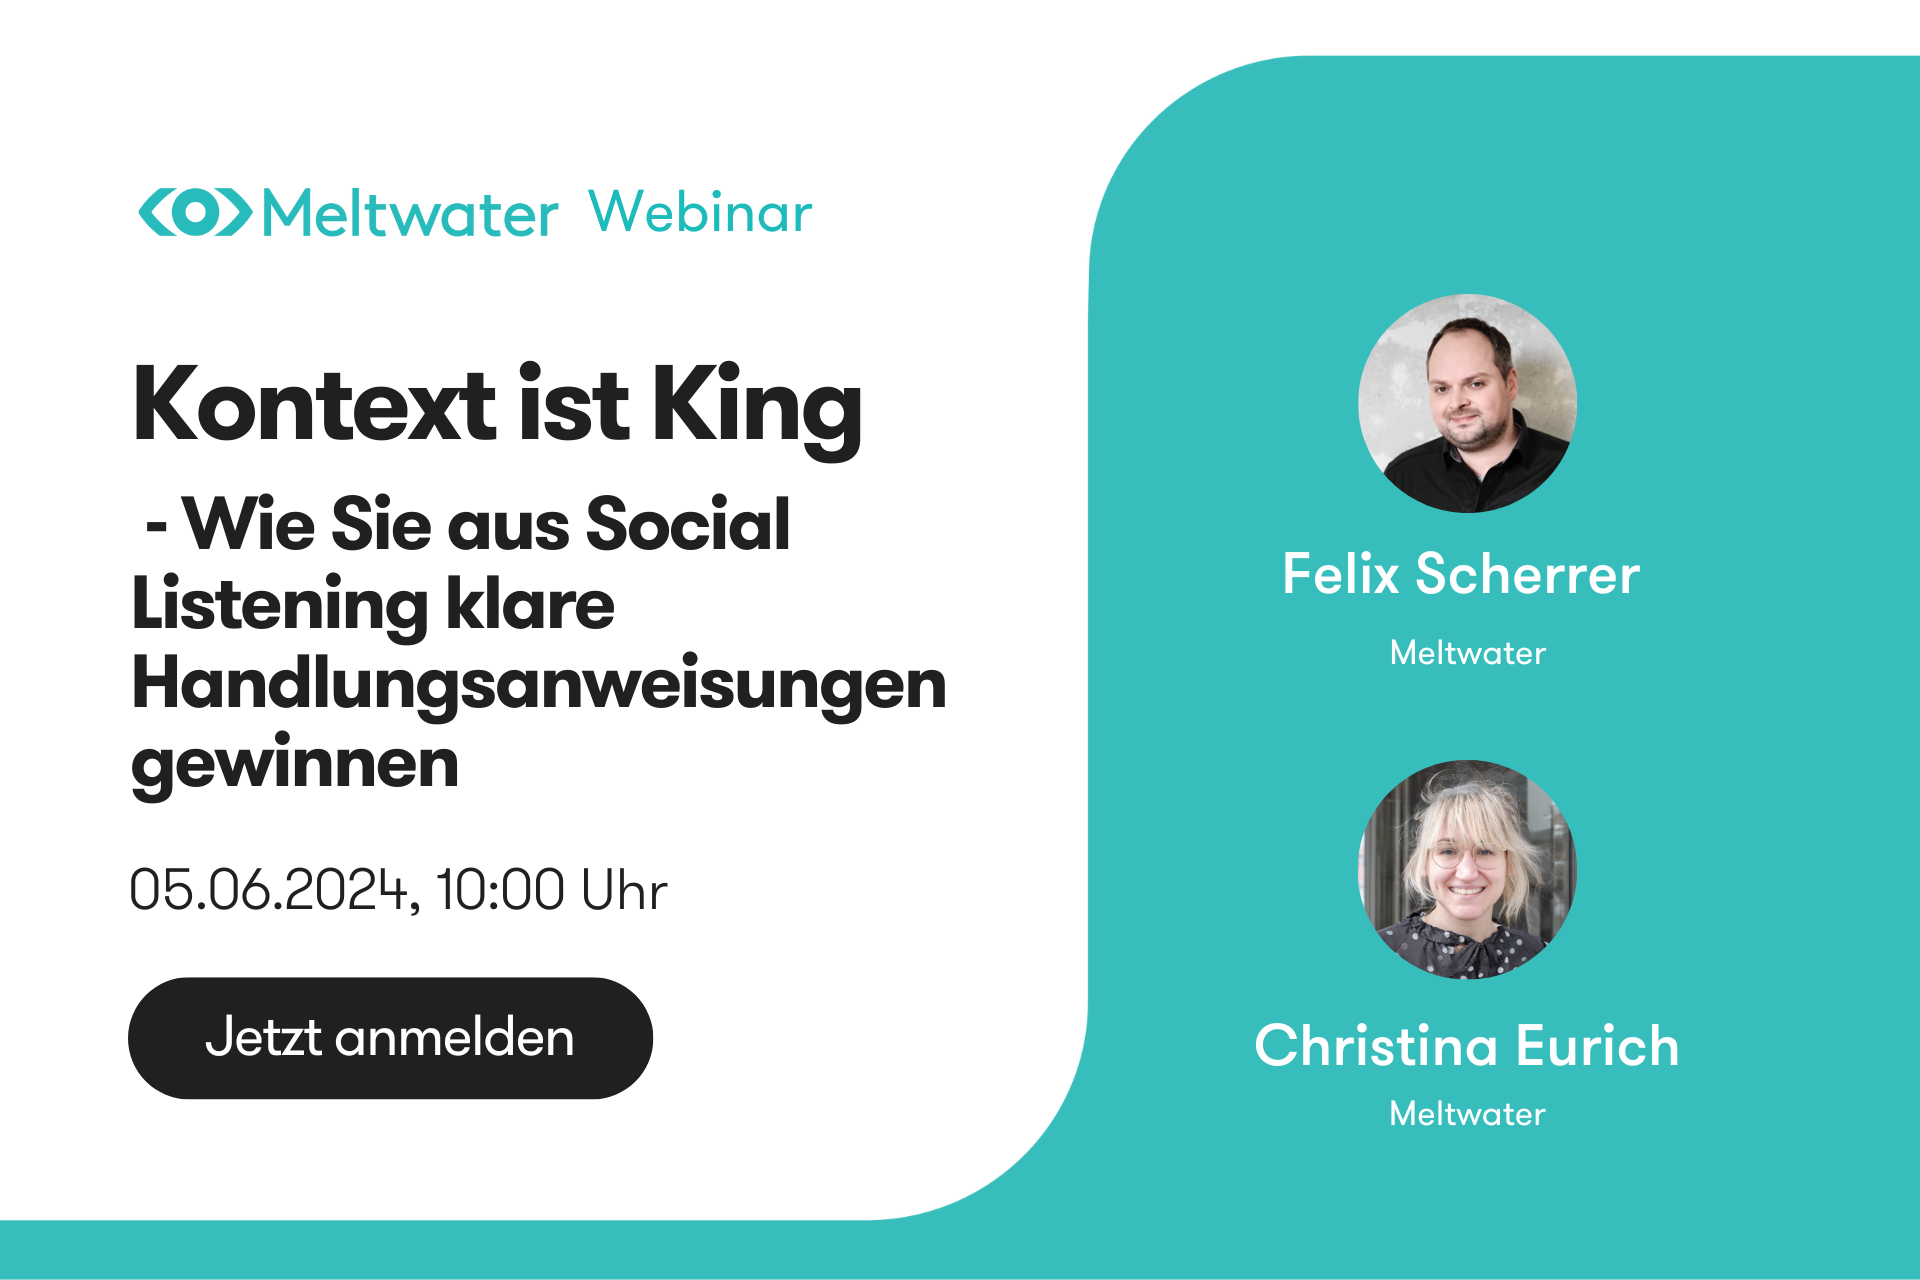 Kontext ist King Webinar am 05.06.24 mit Felix Scherrer und Christina Eurich 